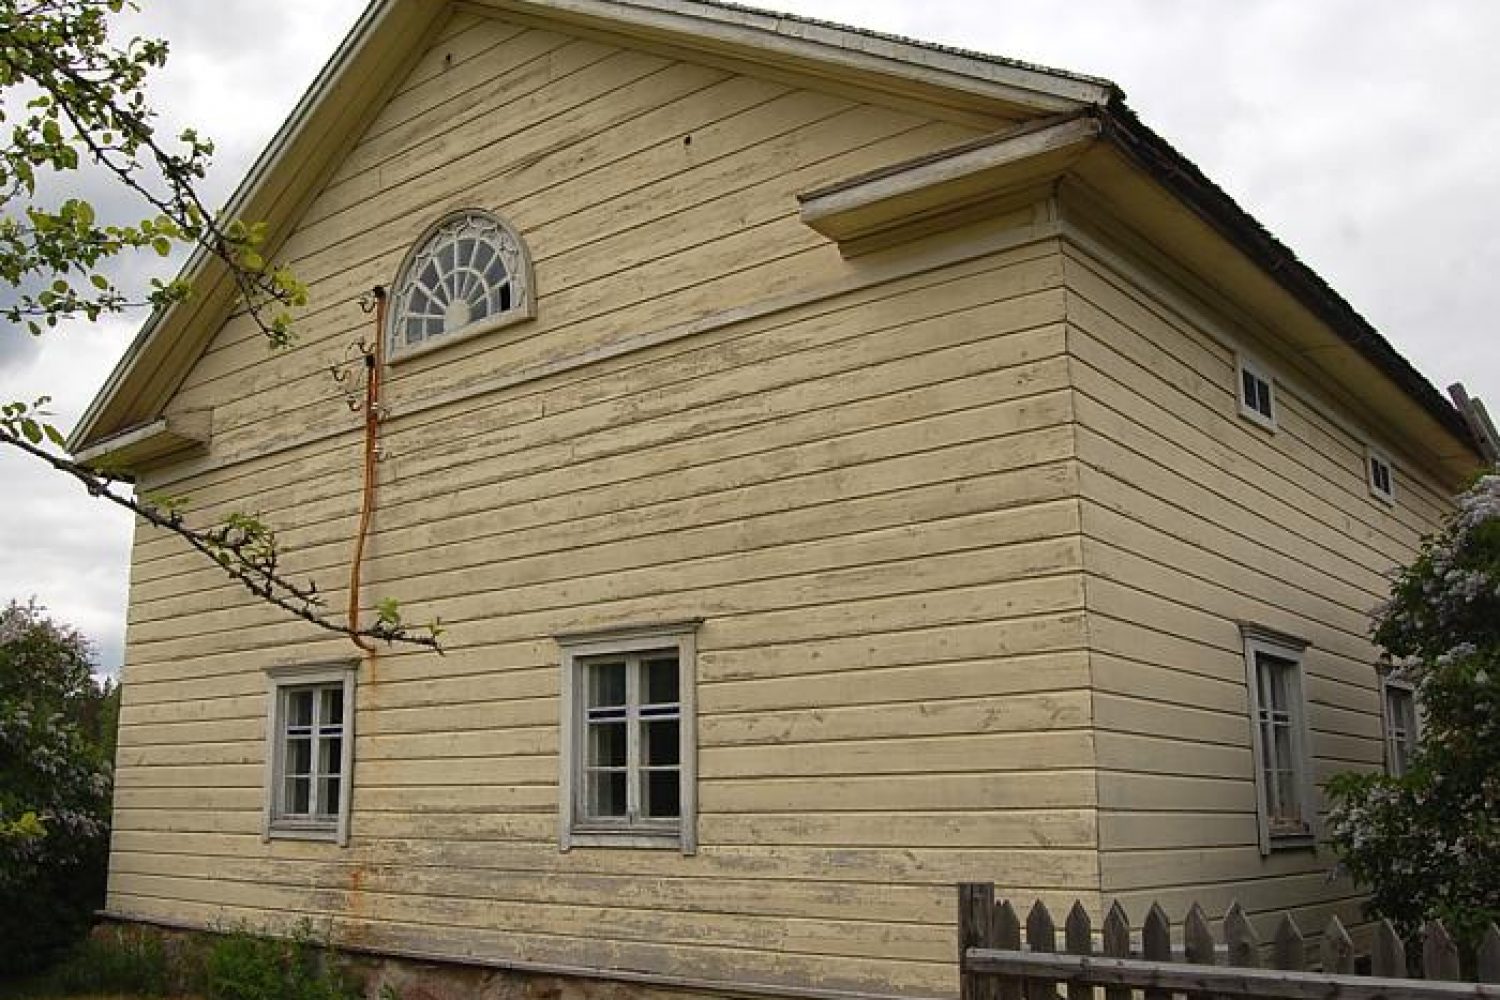 Kuvassa Lyytikkälän tilan päärakennuksen vaakavuorattua ja vaaleaksi maalattua päätyä ruutuikkunoineen. Päätykolmiossa sijaitsevat kissanpenkit ja hämähäkkiverkkoa muistuttava lunetti-ikkuna.